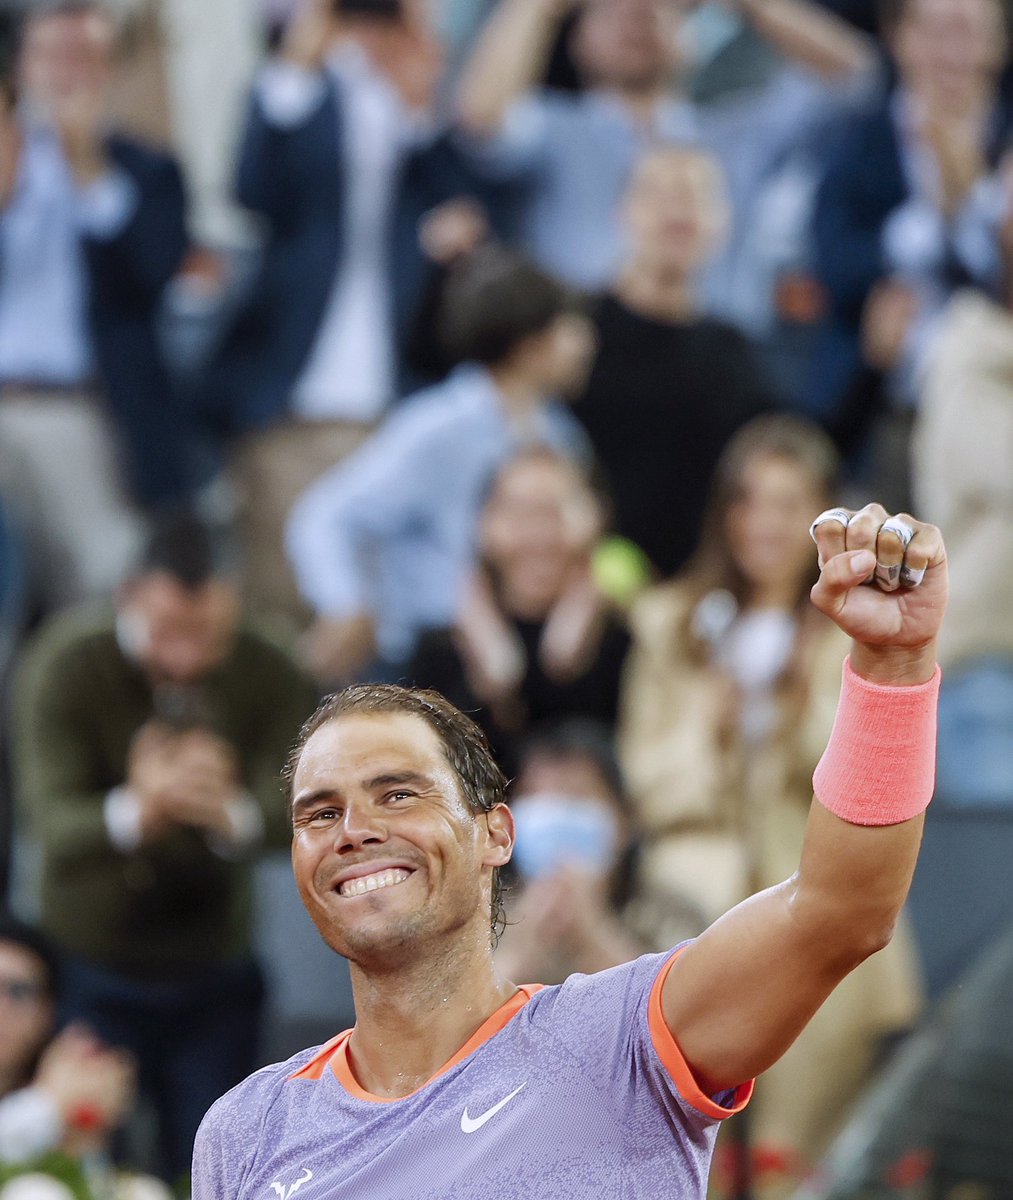 Düşük beklentiyle geldi, son 16’yı gördü! 🔥 Rafael Nadal, Pedro Cachin’i 6-1 6-7 6-3 ile yenerek #MMOpen’da yoluna devam etti. Sizce şampiyonluk ihtimaller arasında mı❓